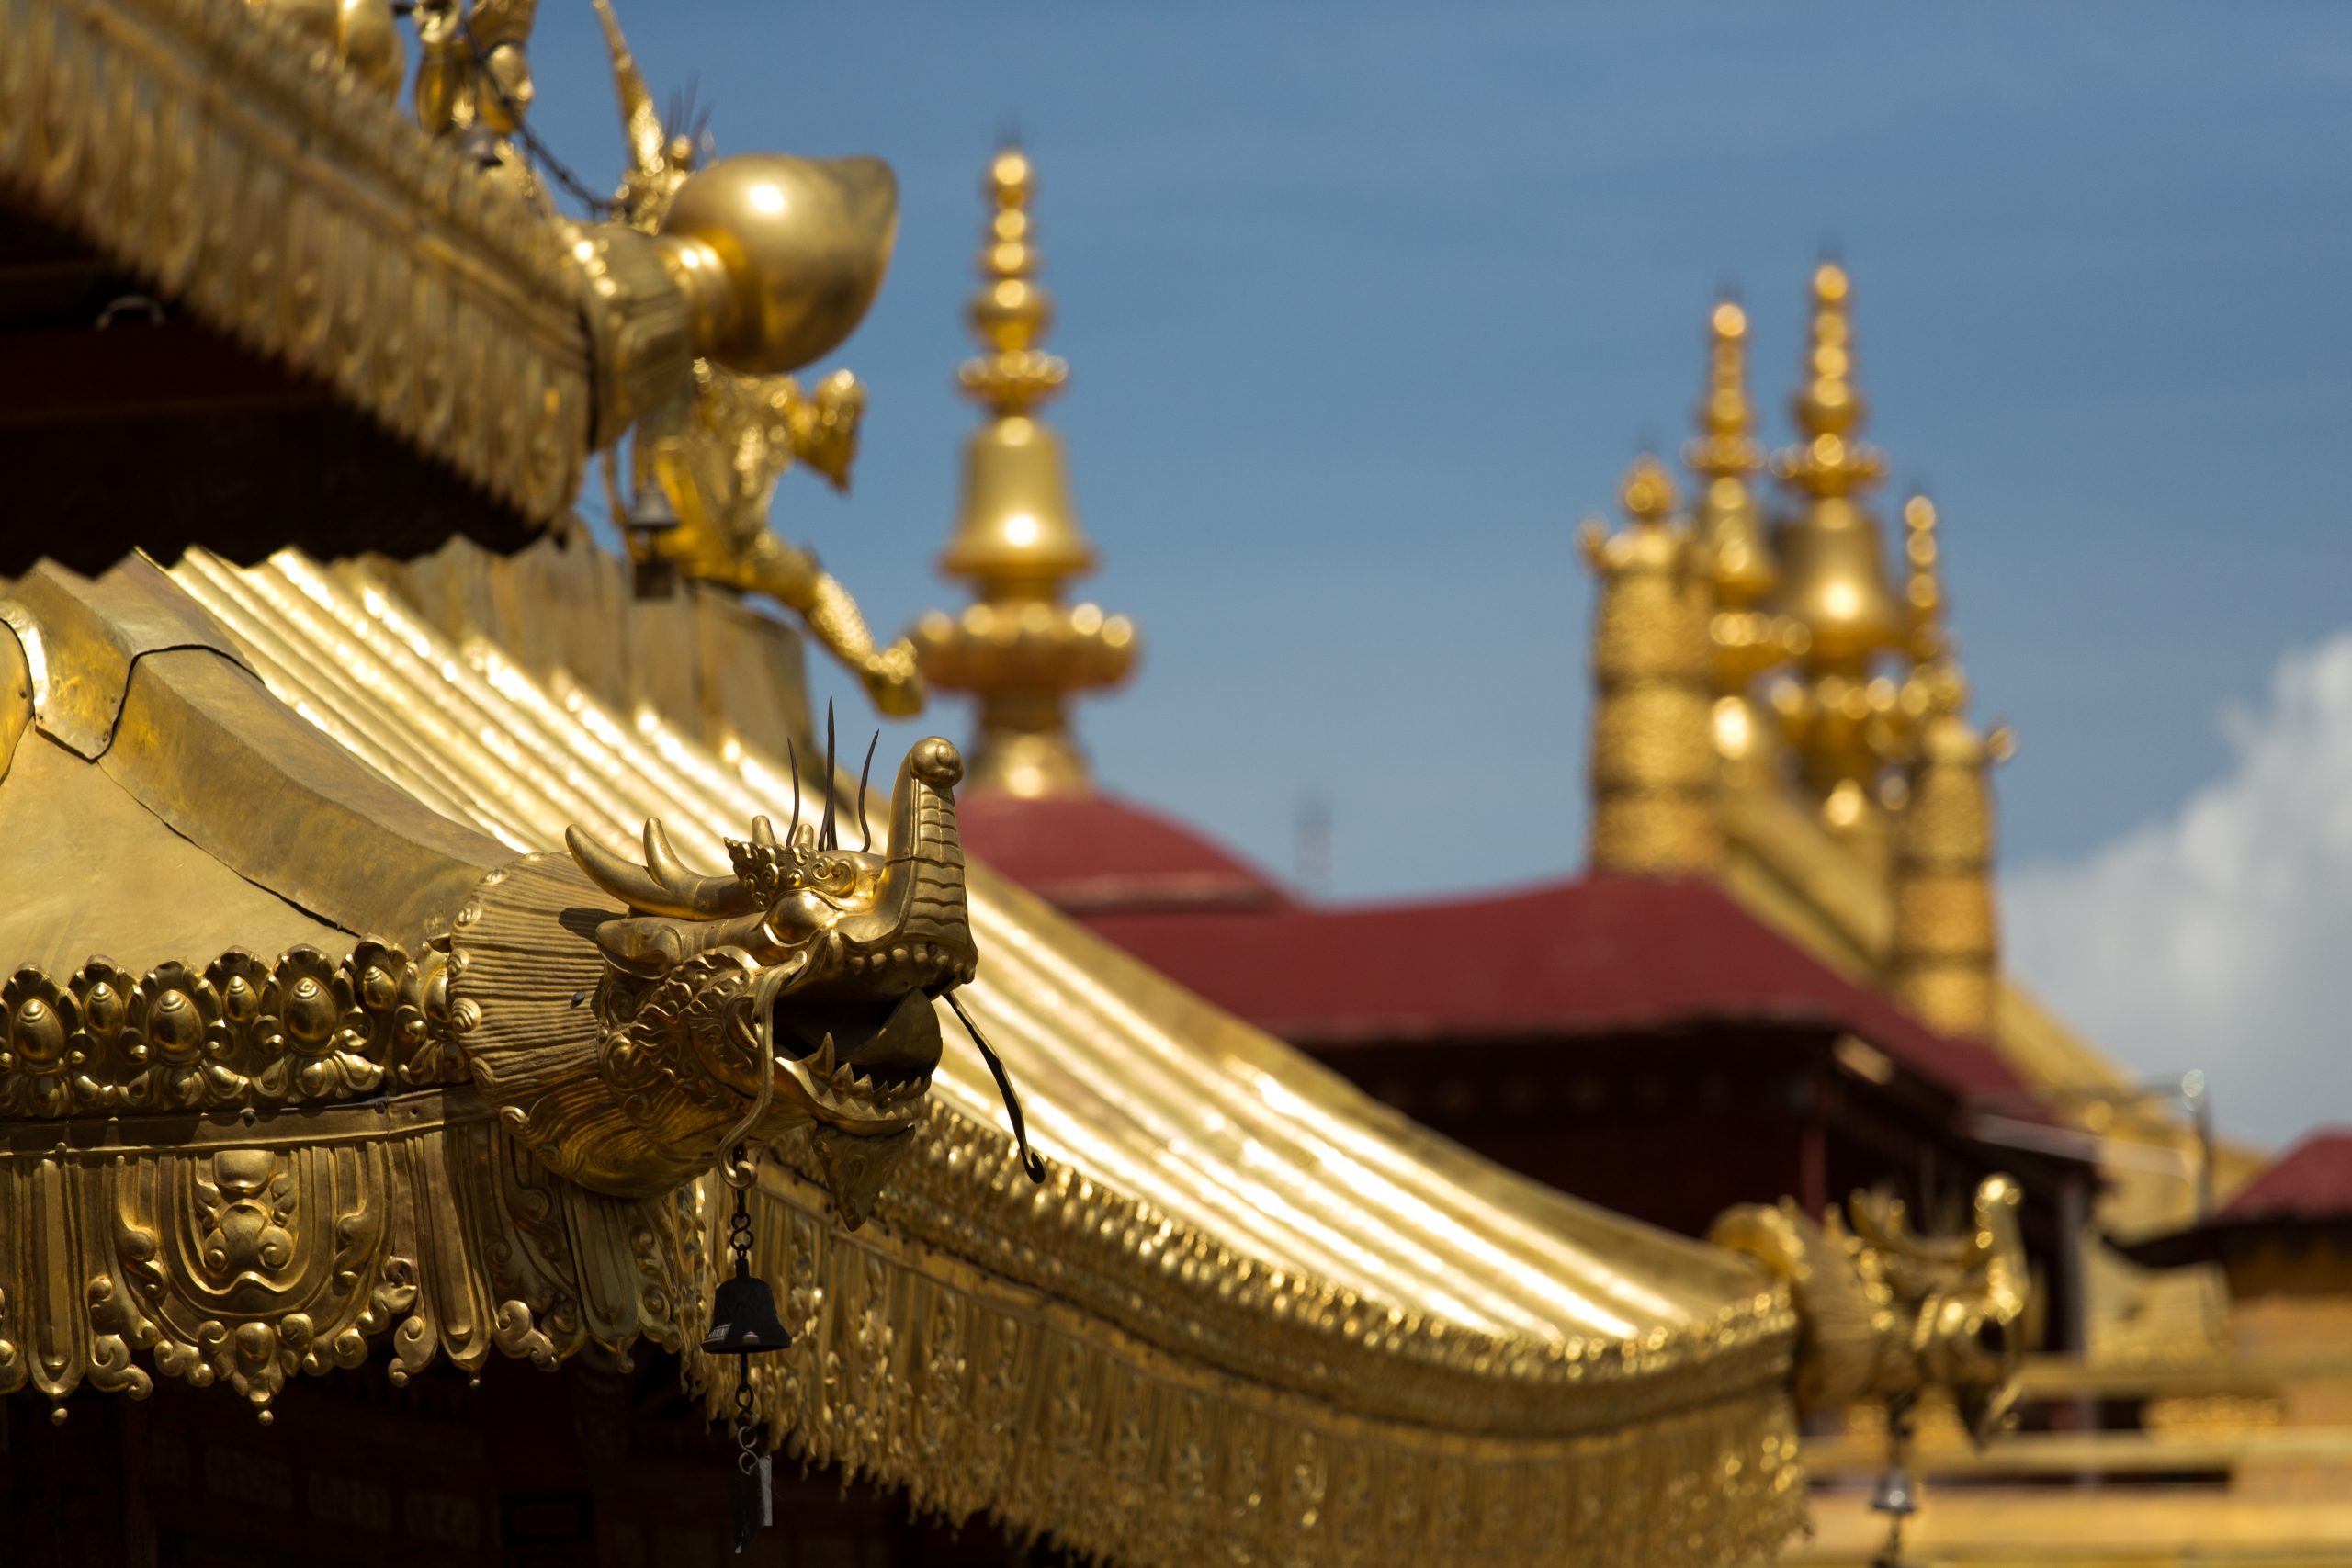 sự quyến rũ đặc sắc từ kiến trúc tây tạng